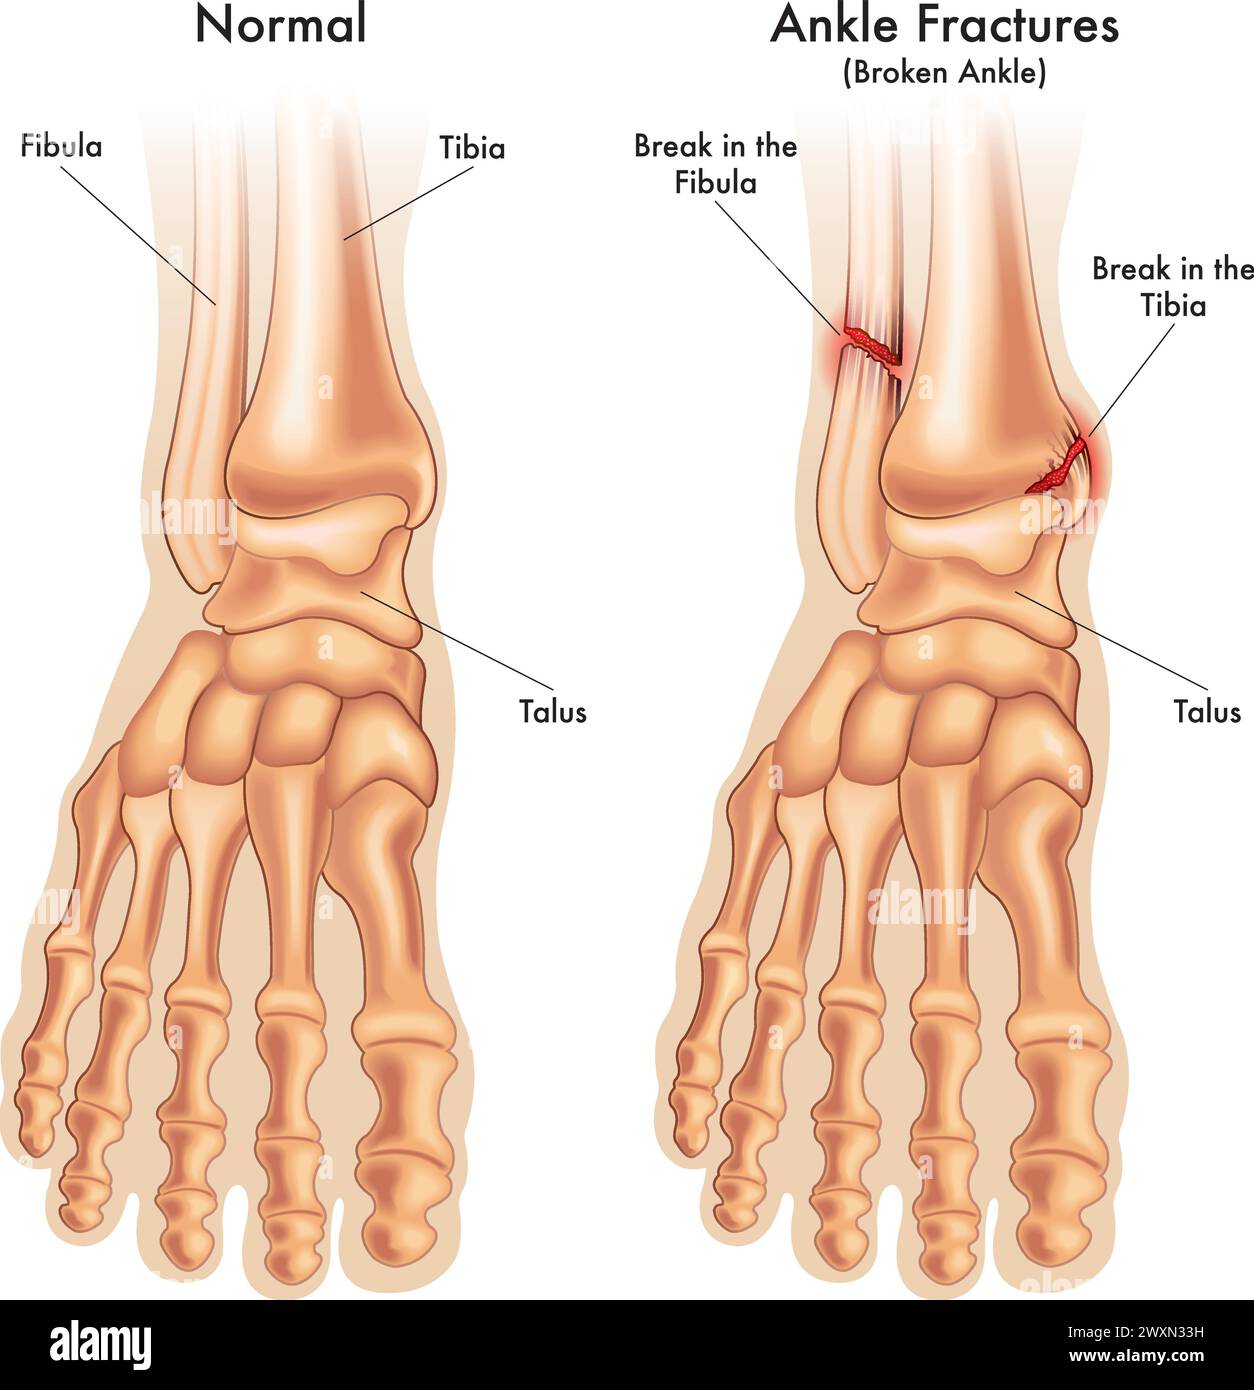 l'illustrazione medica mette a confronto una caviglia normale del piede, con una caviglia del piede fratturata in due punti, con annotazioni. Illustrazione Vettoriale